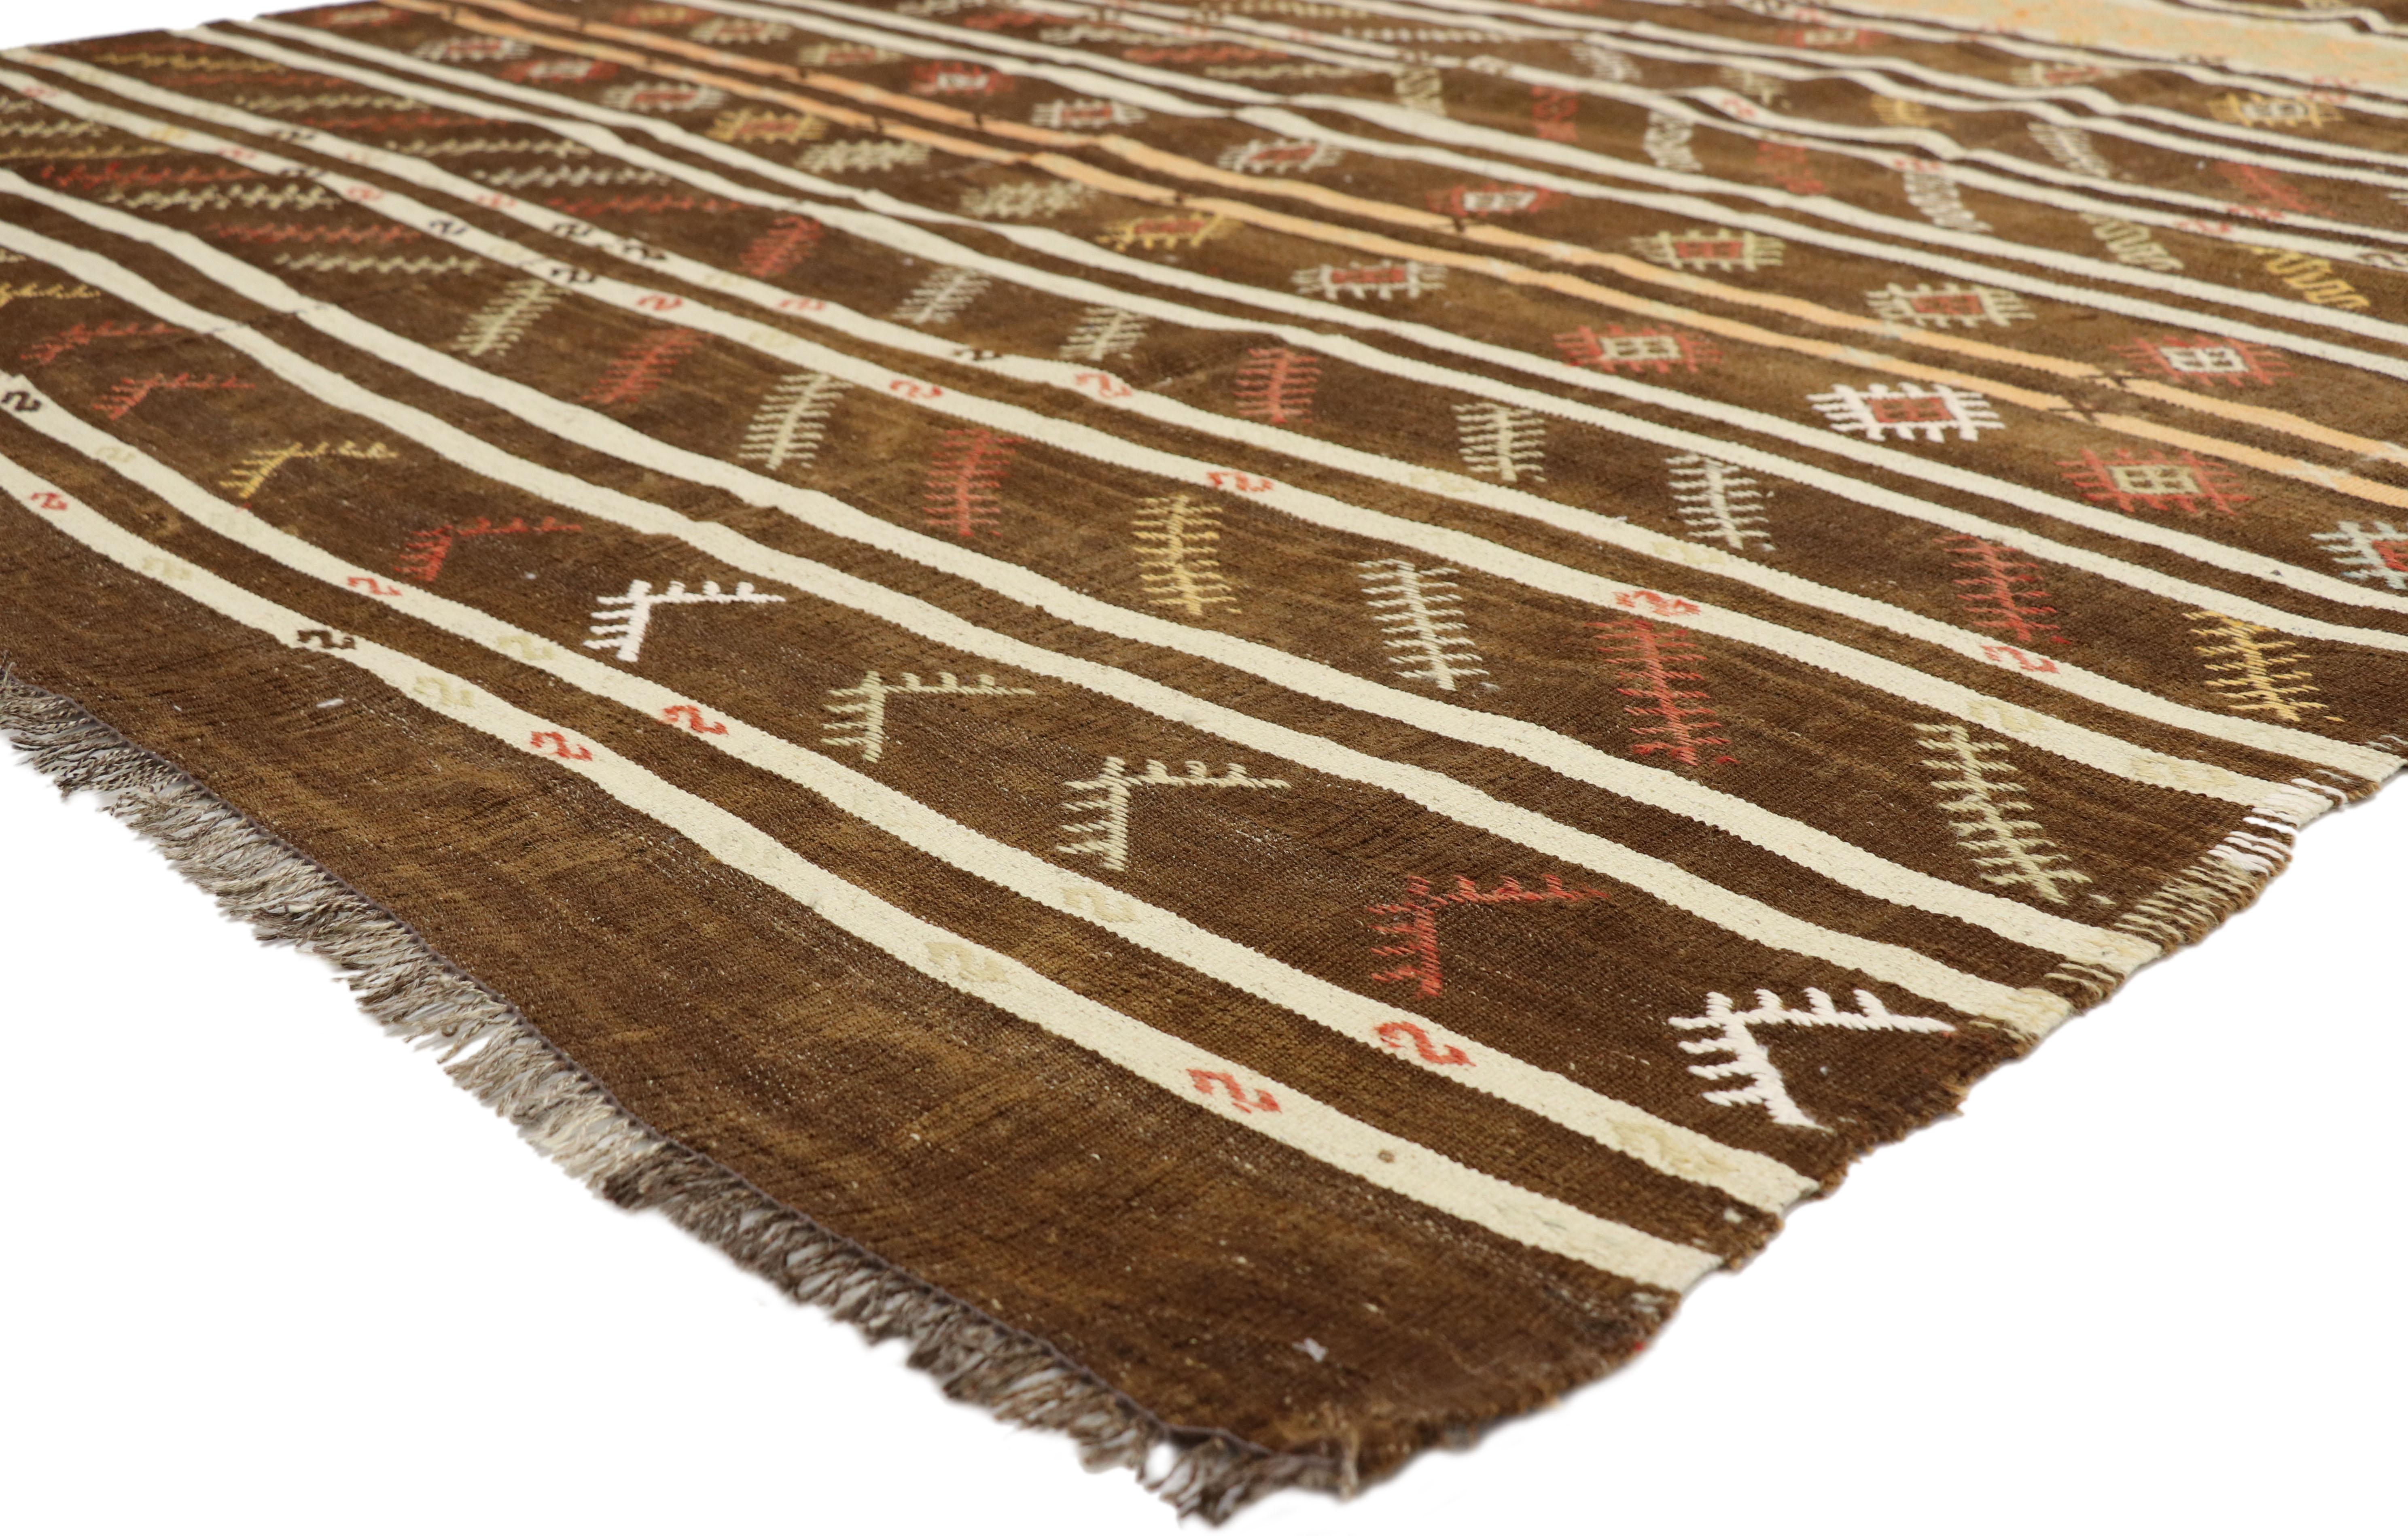 51333, tapis Kilim turc vintage à rayures, style Bohème Tribal, tapis à tissage plat. Ce tapis Kilim turc vintage en laine tissé à la main présente des bandes doublement colorées avec des motifs turcs symboliques sur un fond brun chaud. Des rangées